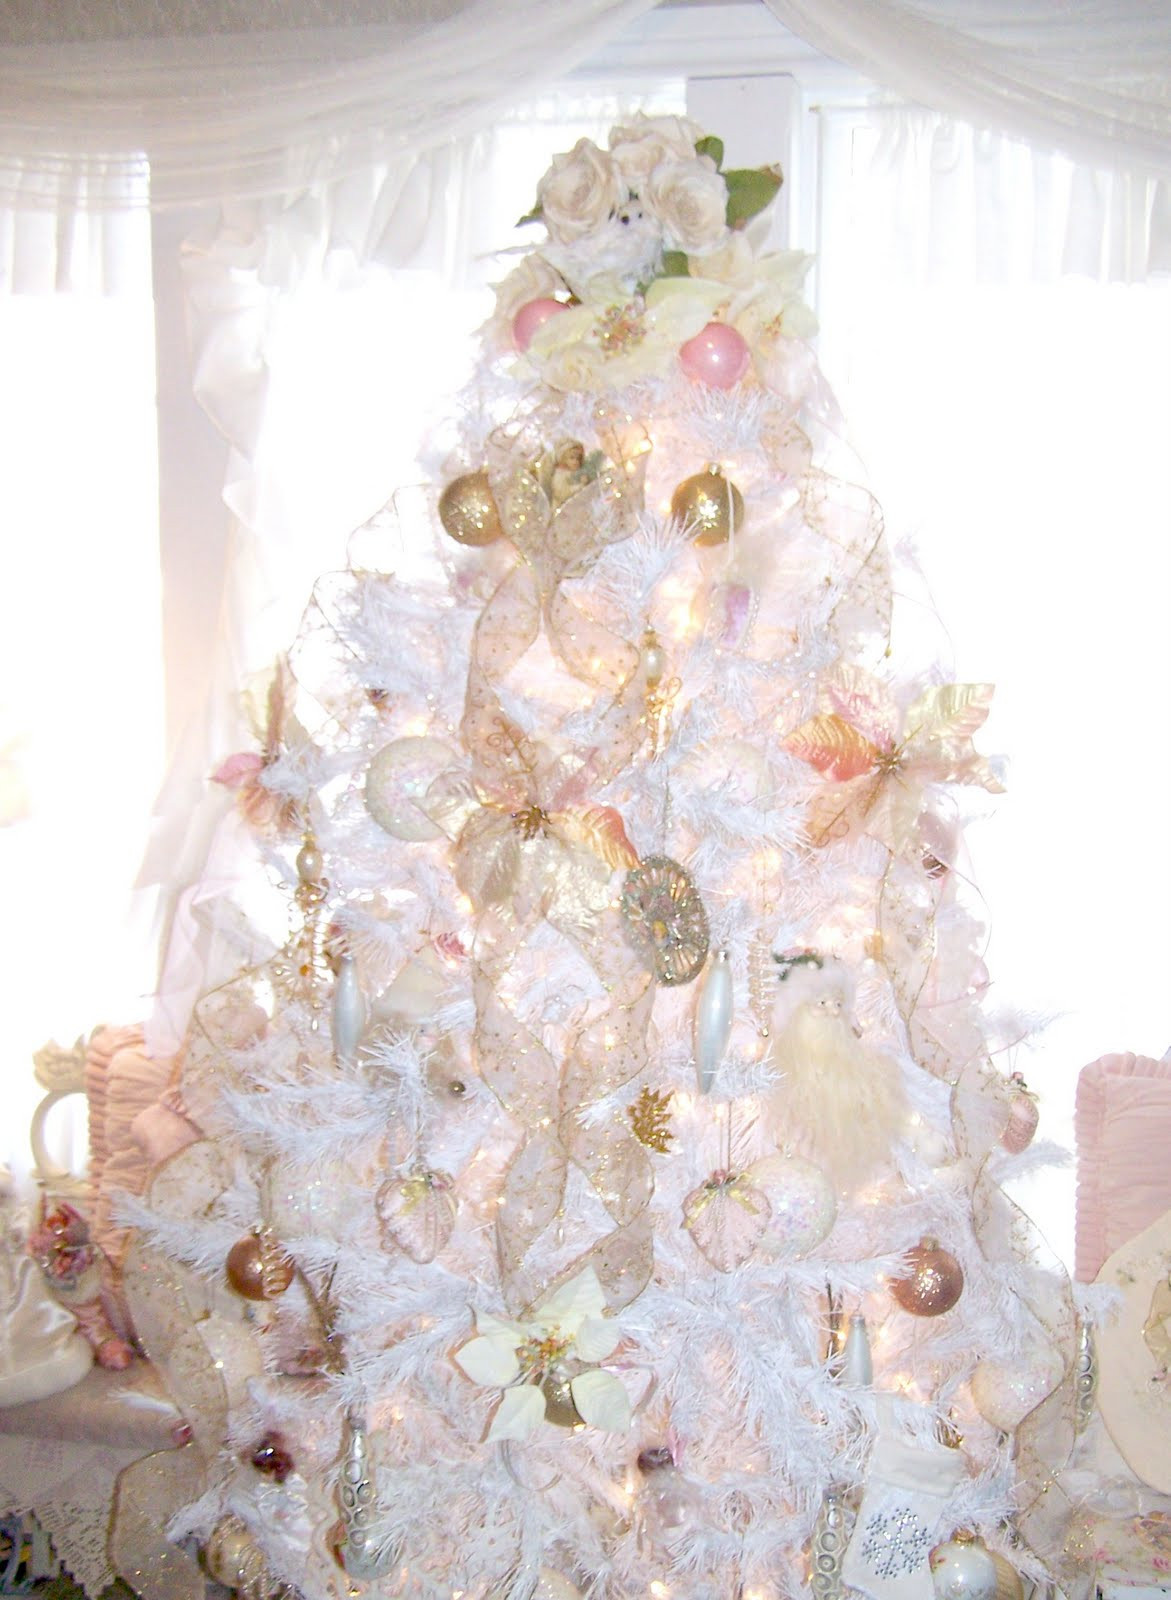 Shabby Chic Christmas Tree Decorations
 Olivia s Romantic Home Shabby Chic White Christmas Tree